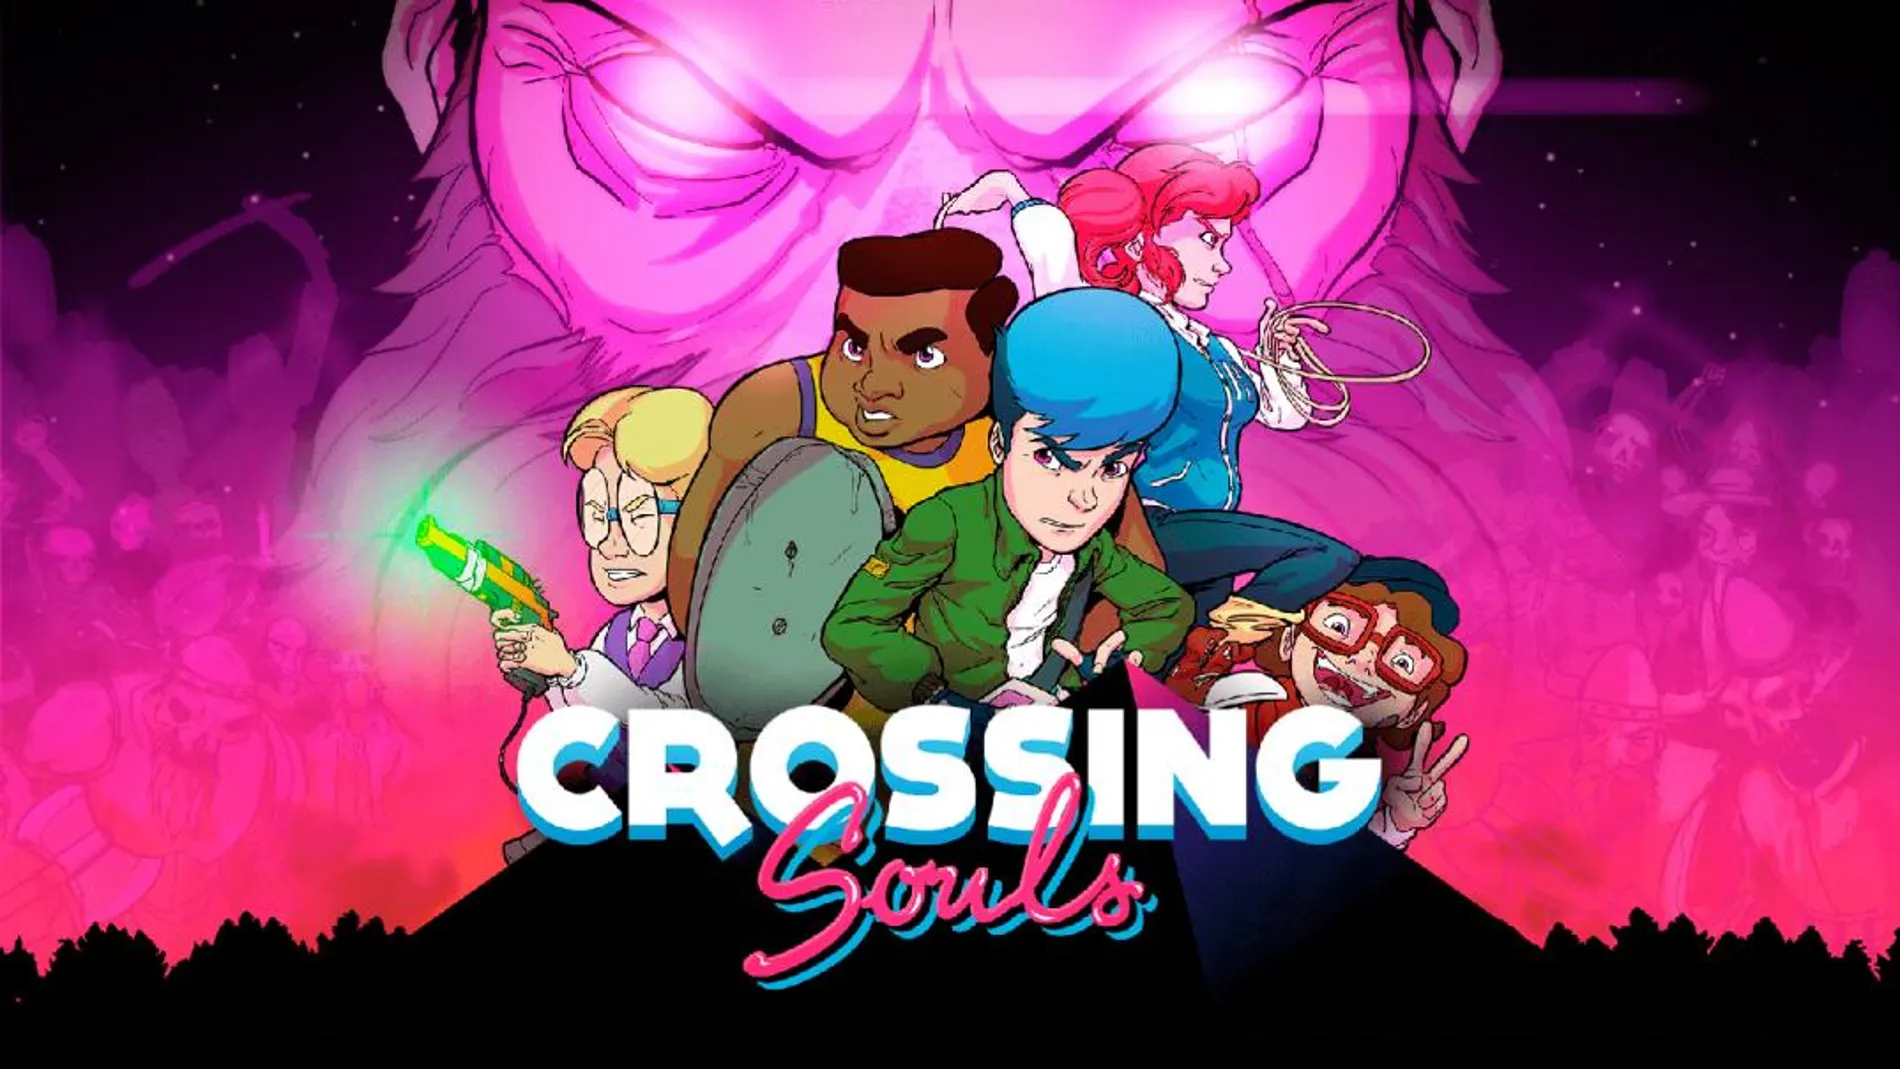 Tráiler de lanzamiento de Crossing Souls, que llega a PlayStation 4 y PC